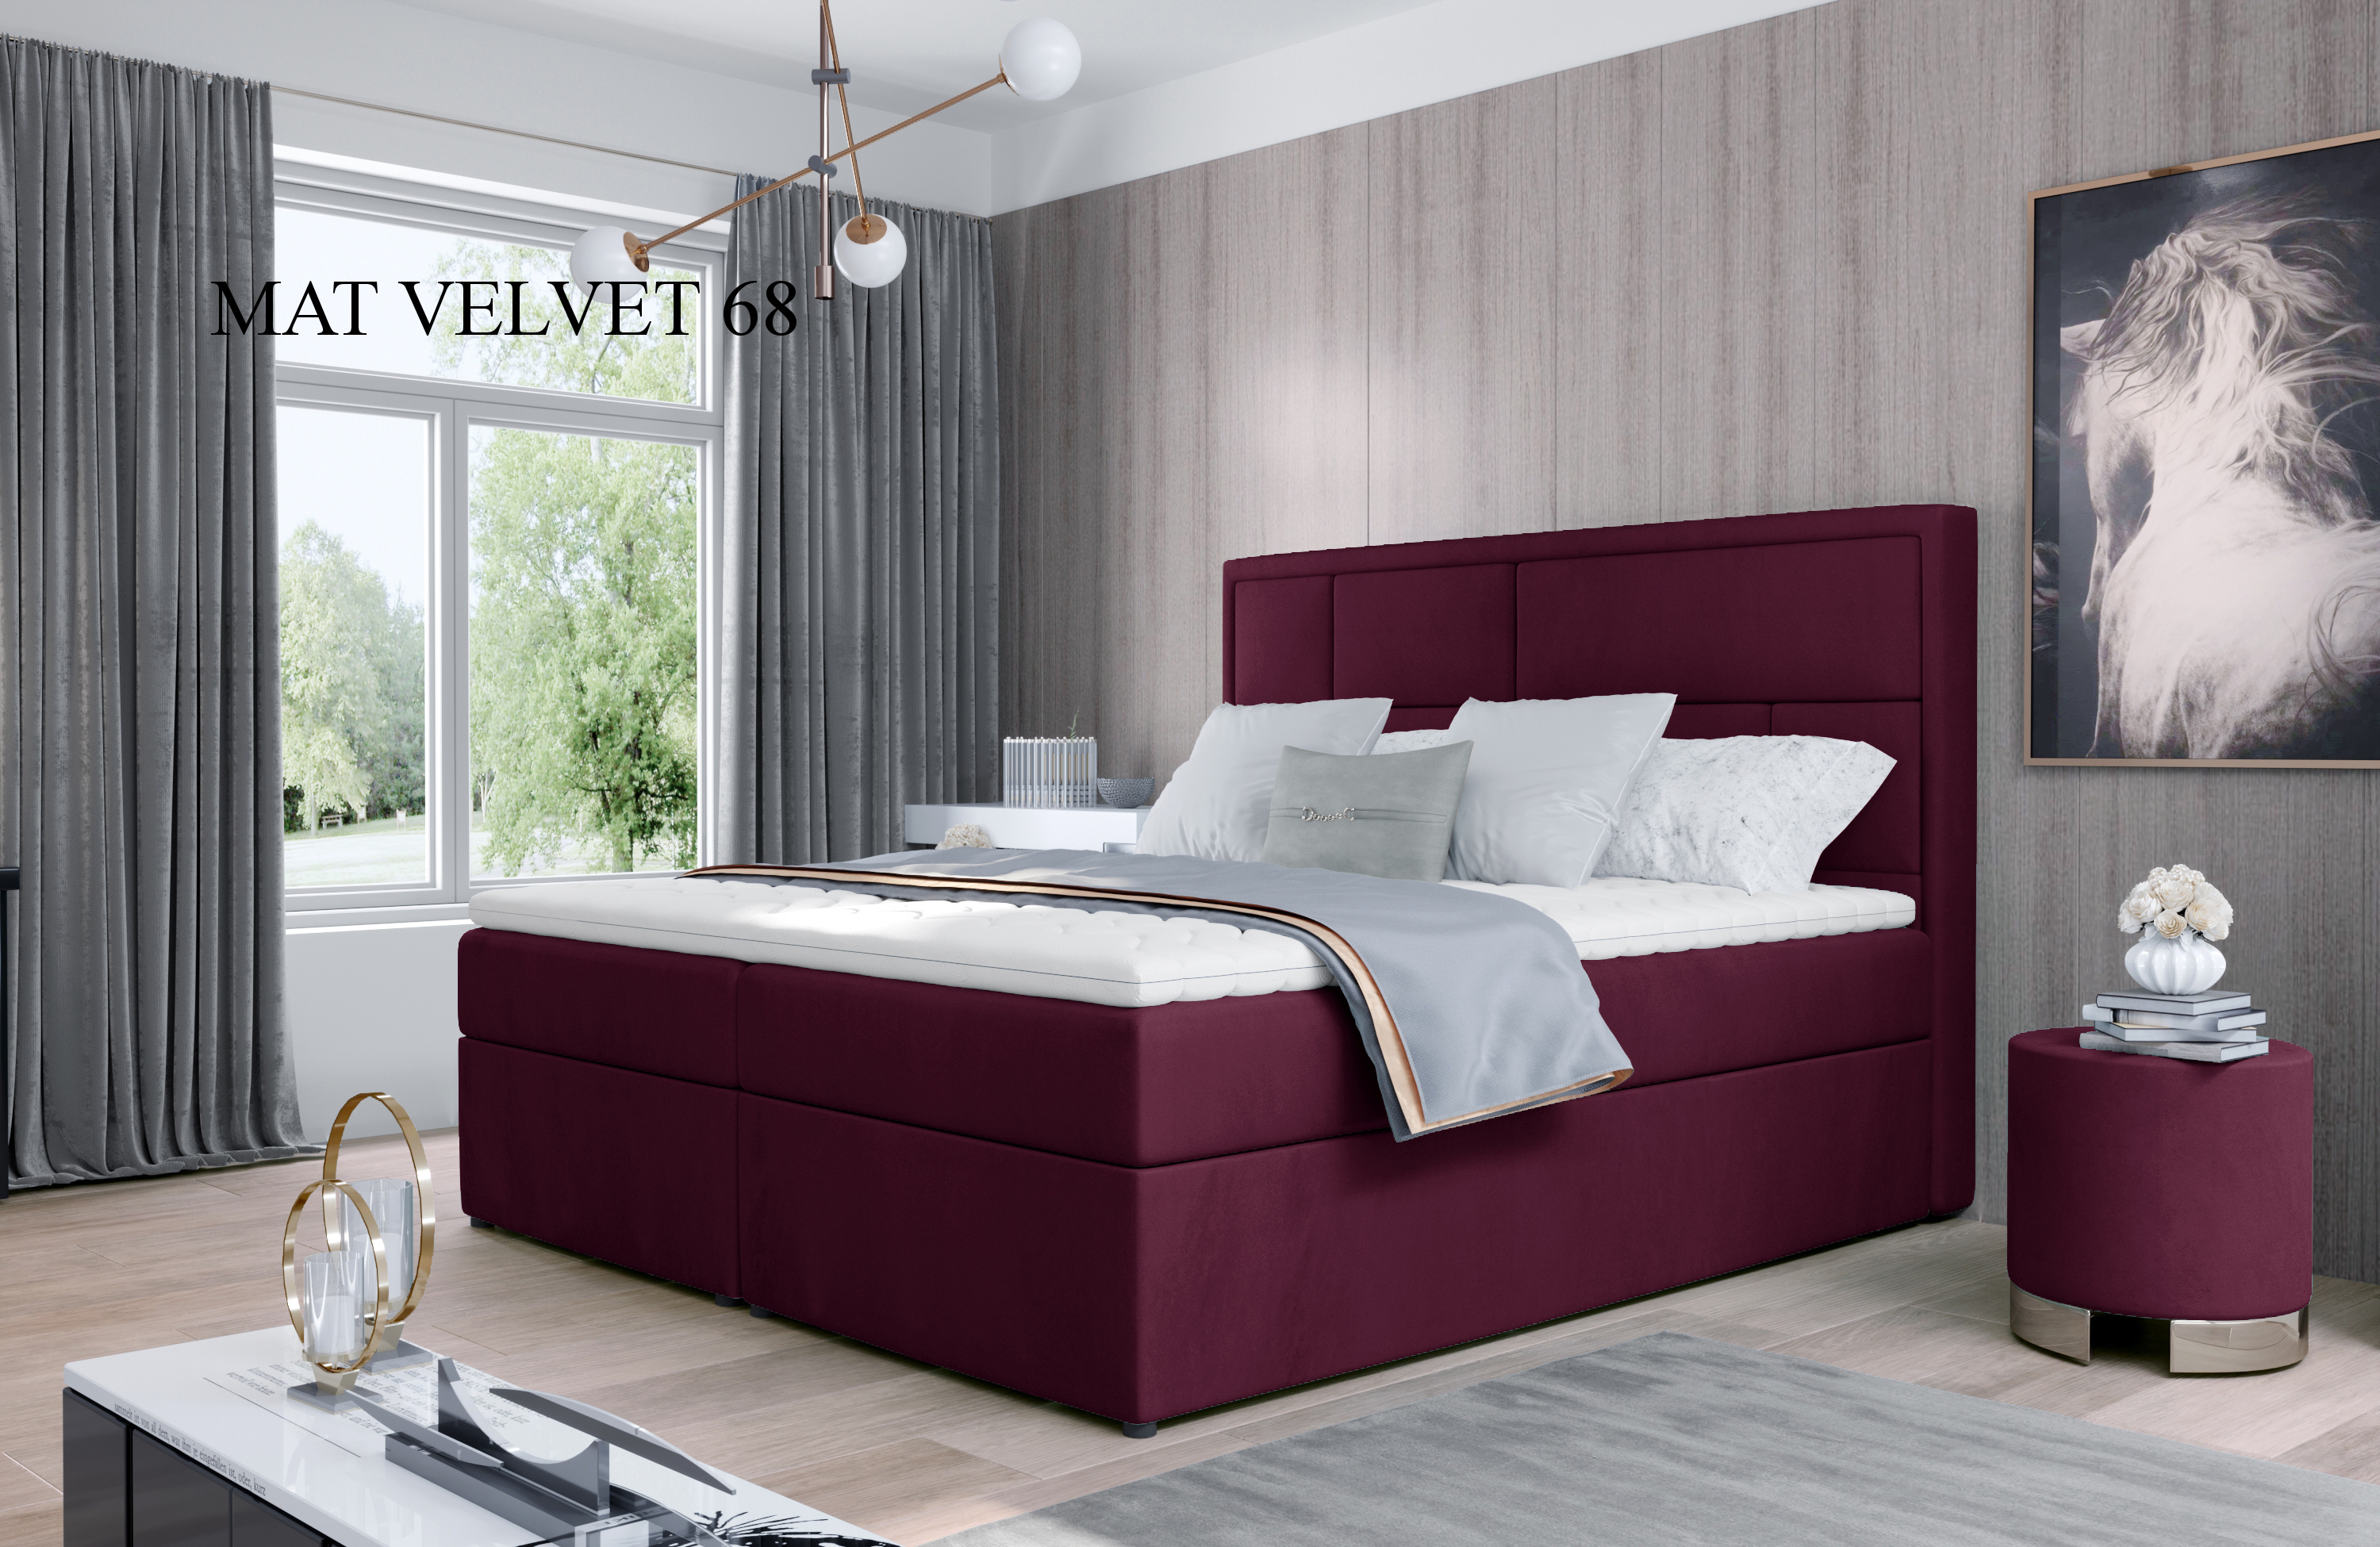 Čalouněná postel MERON Boxsprings 140 x 200 cm Provedení: Mat Velvet 68